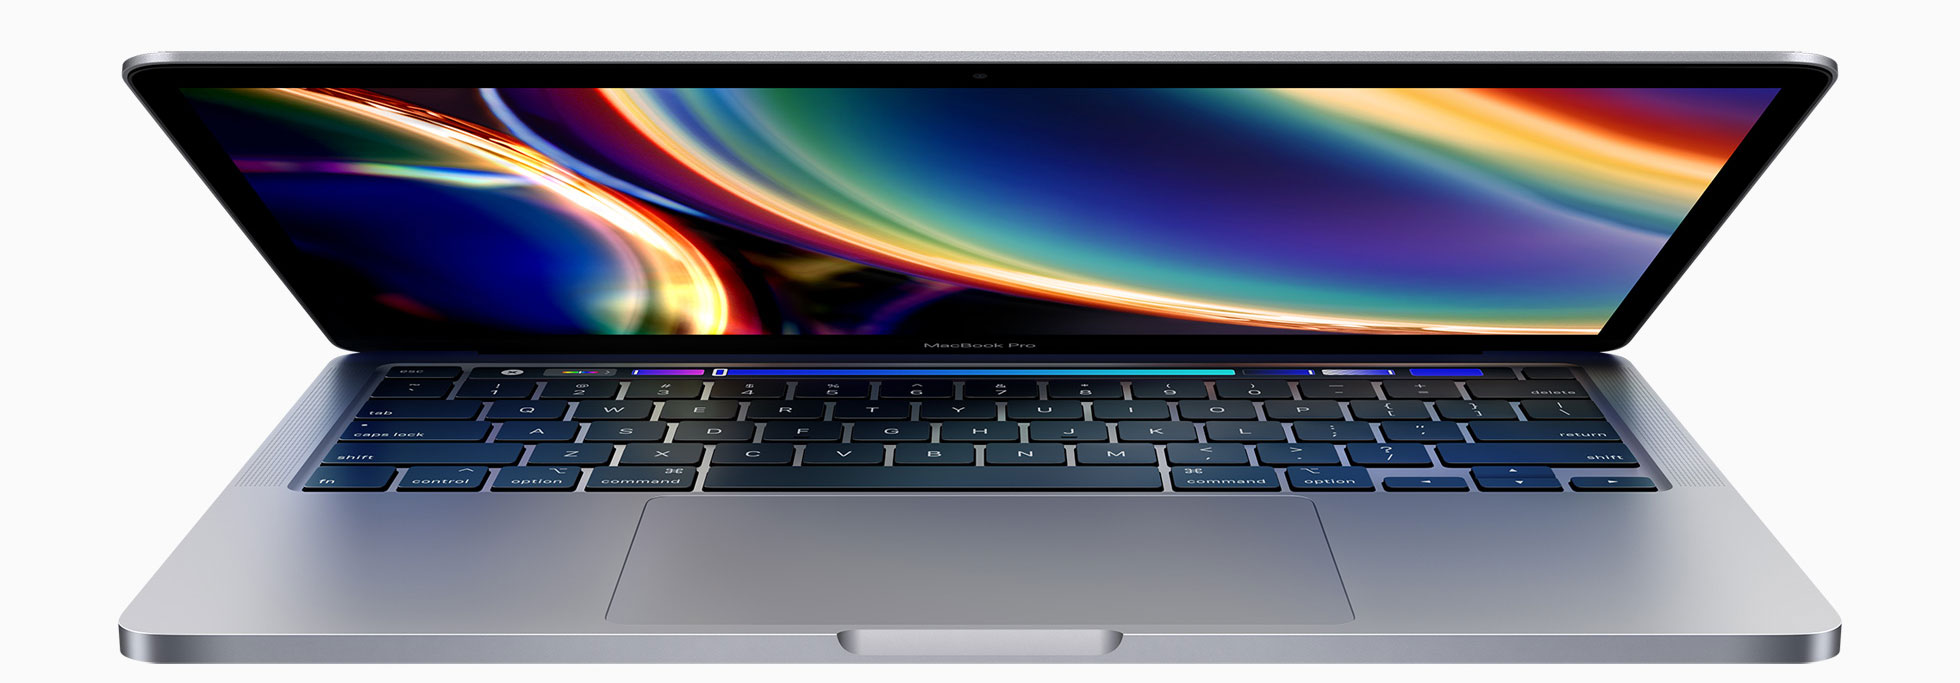 MacBook Pro de 13 pulgadas del 2020 con Magic Keyboard